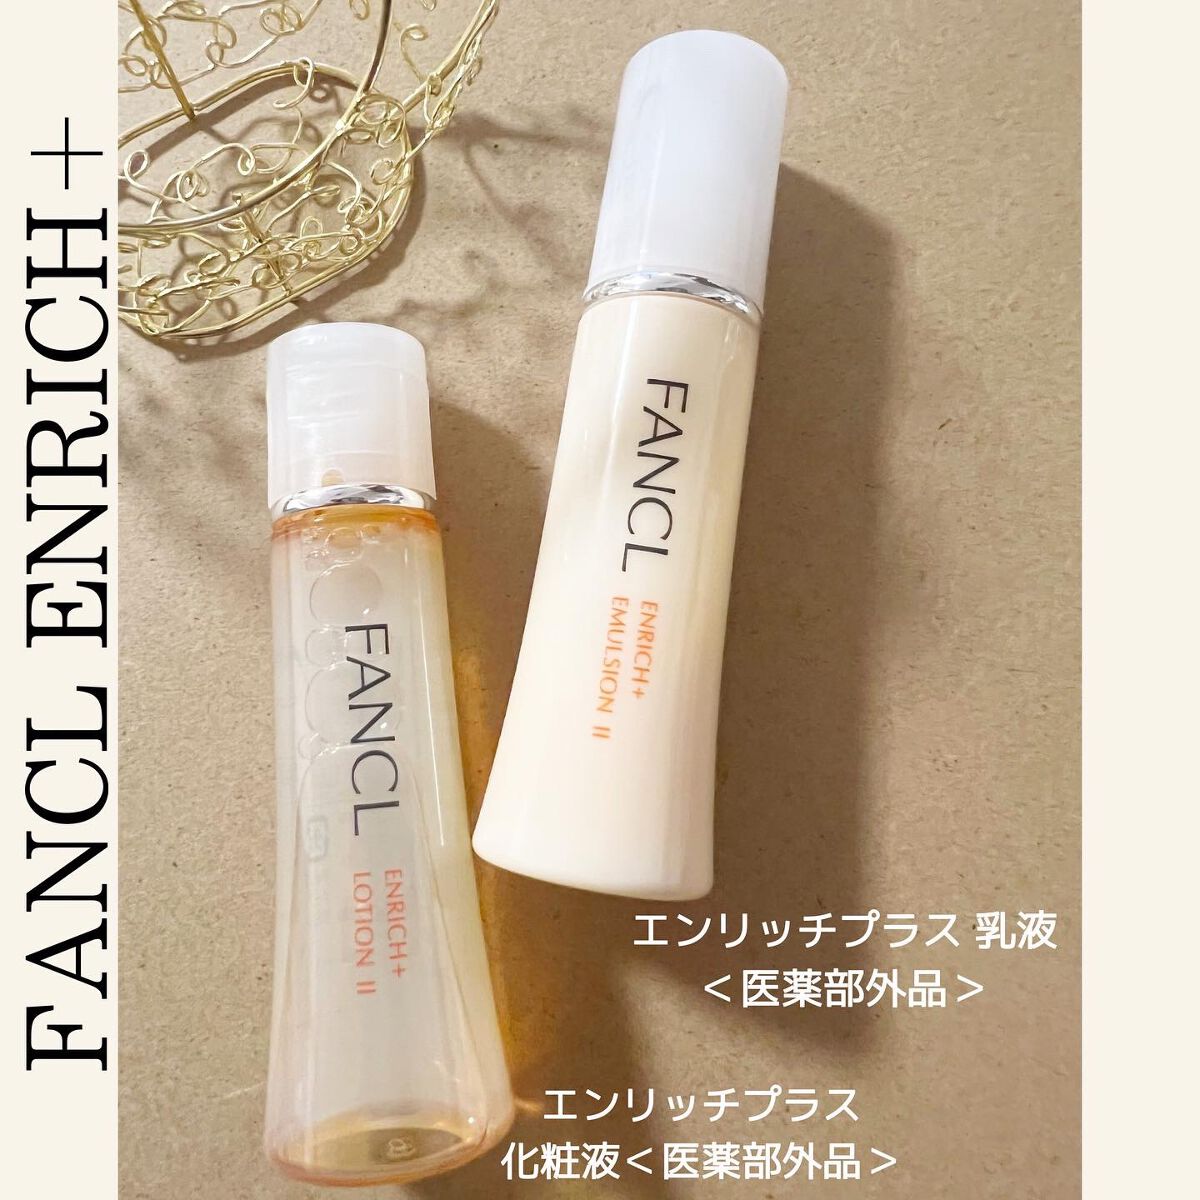 ファンケル エンリッチ 化粧水、乳液 II しっとり(30ml)